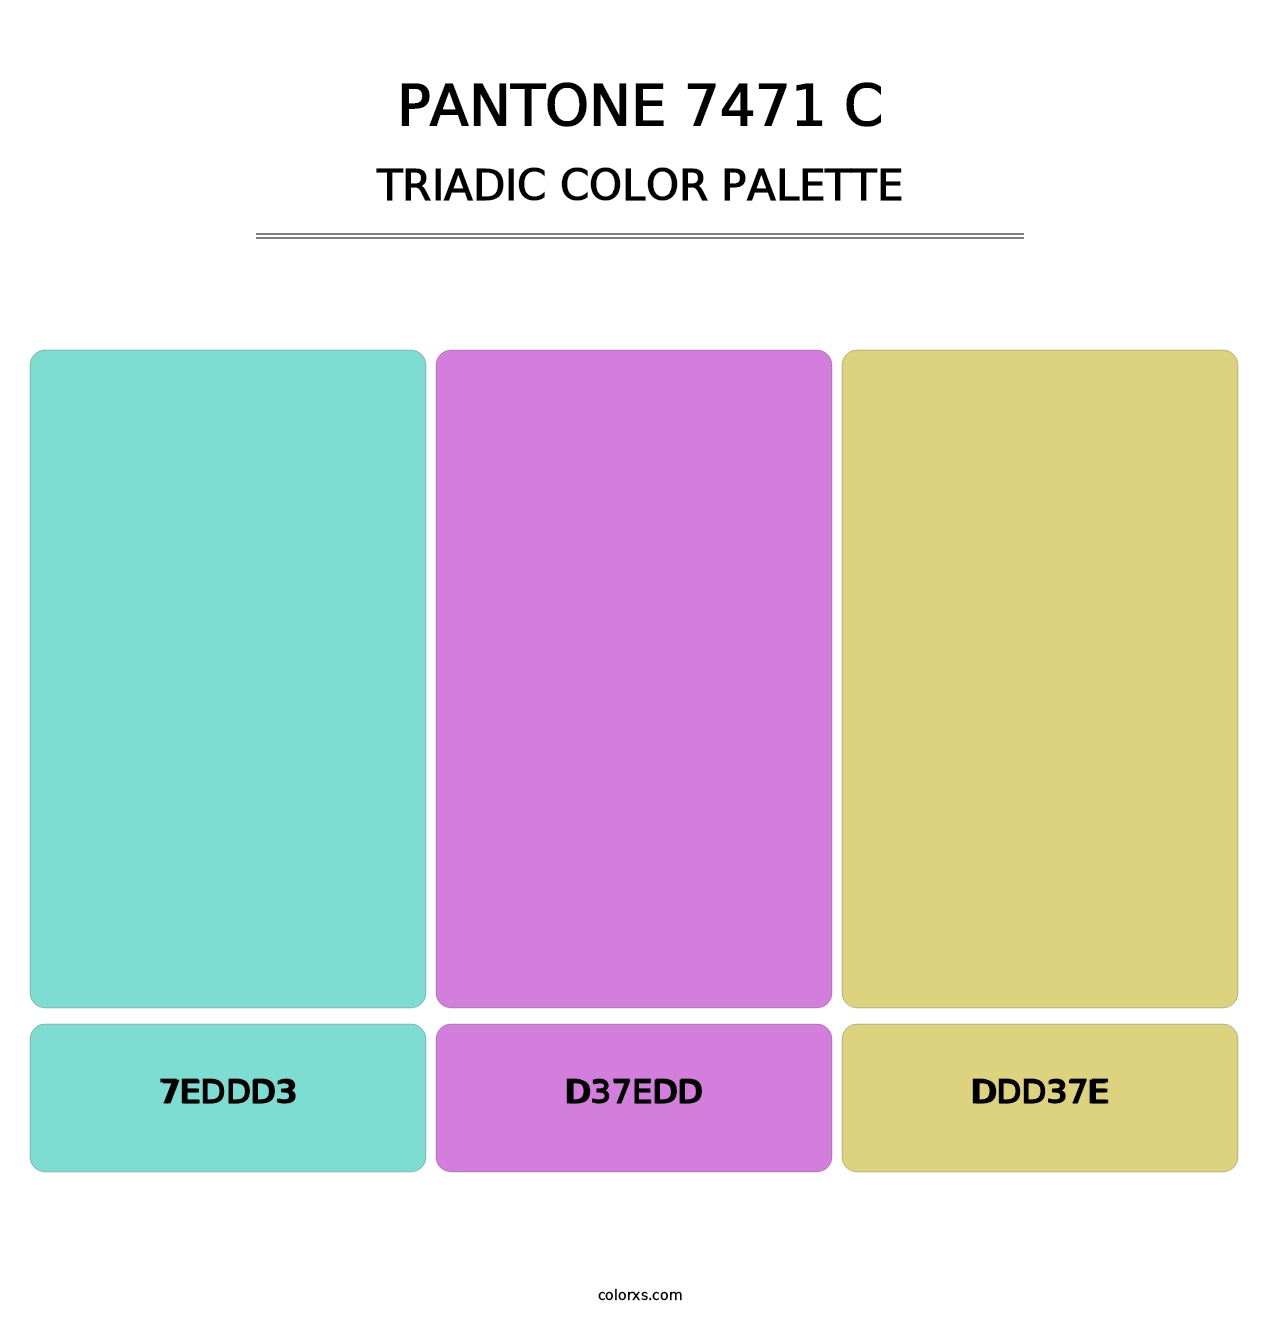 PANTONE 7471 C - Triadic Color Palette